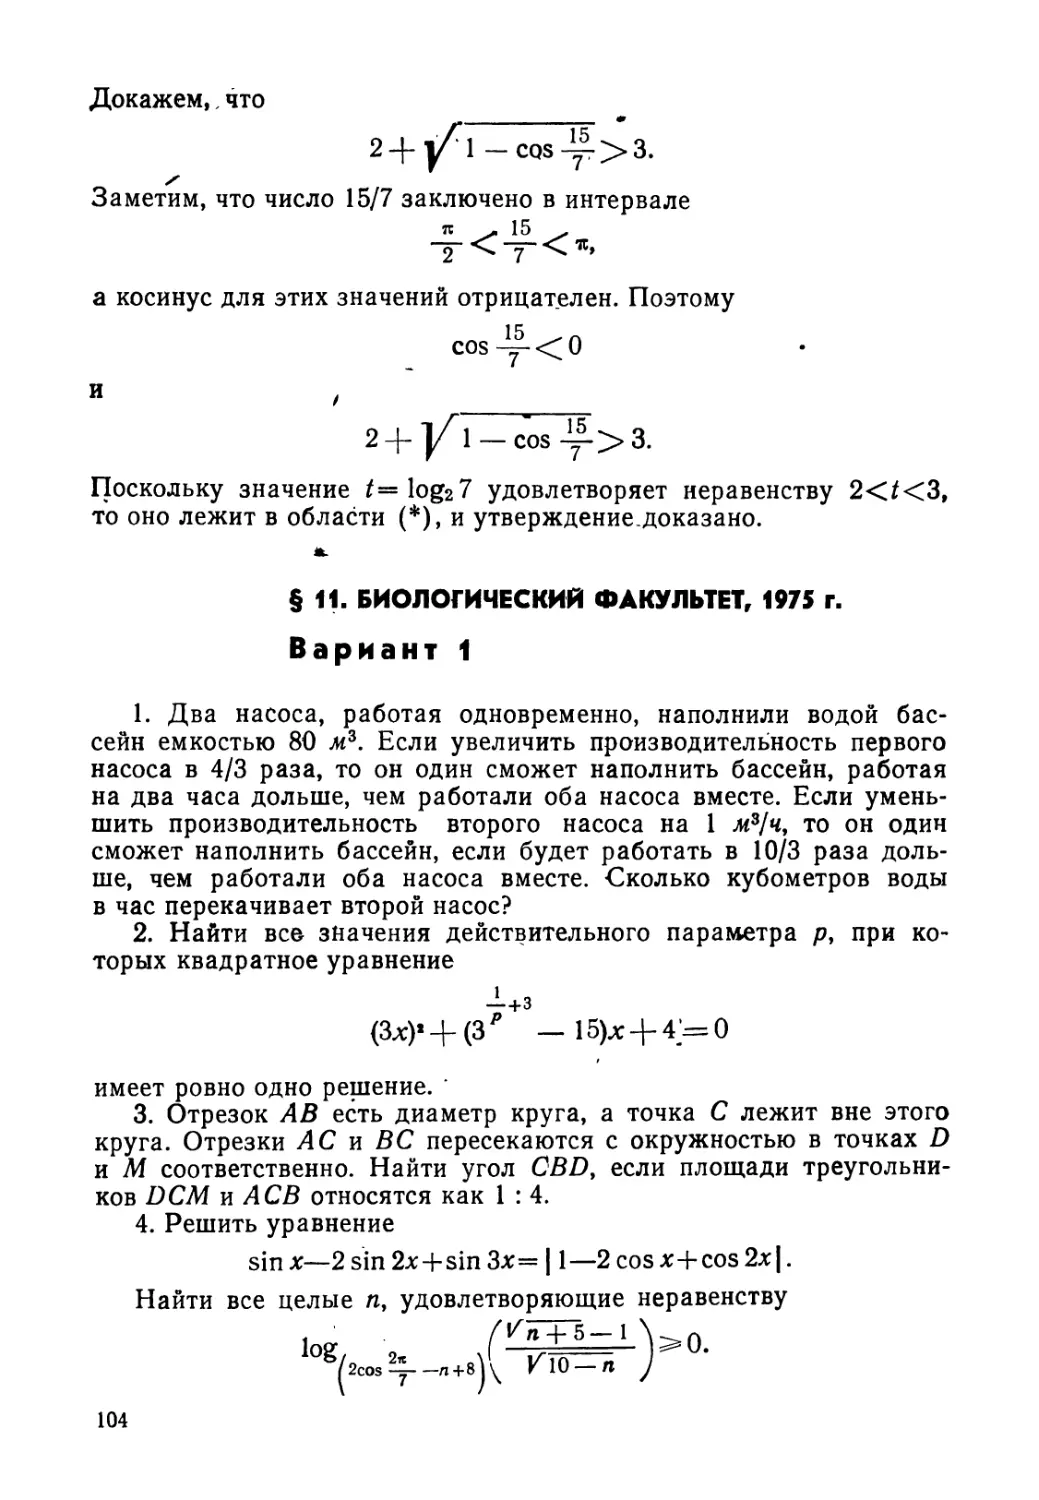 § 11. Биологический факультет, 1975 г